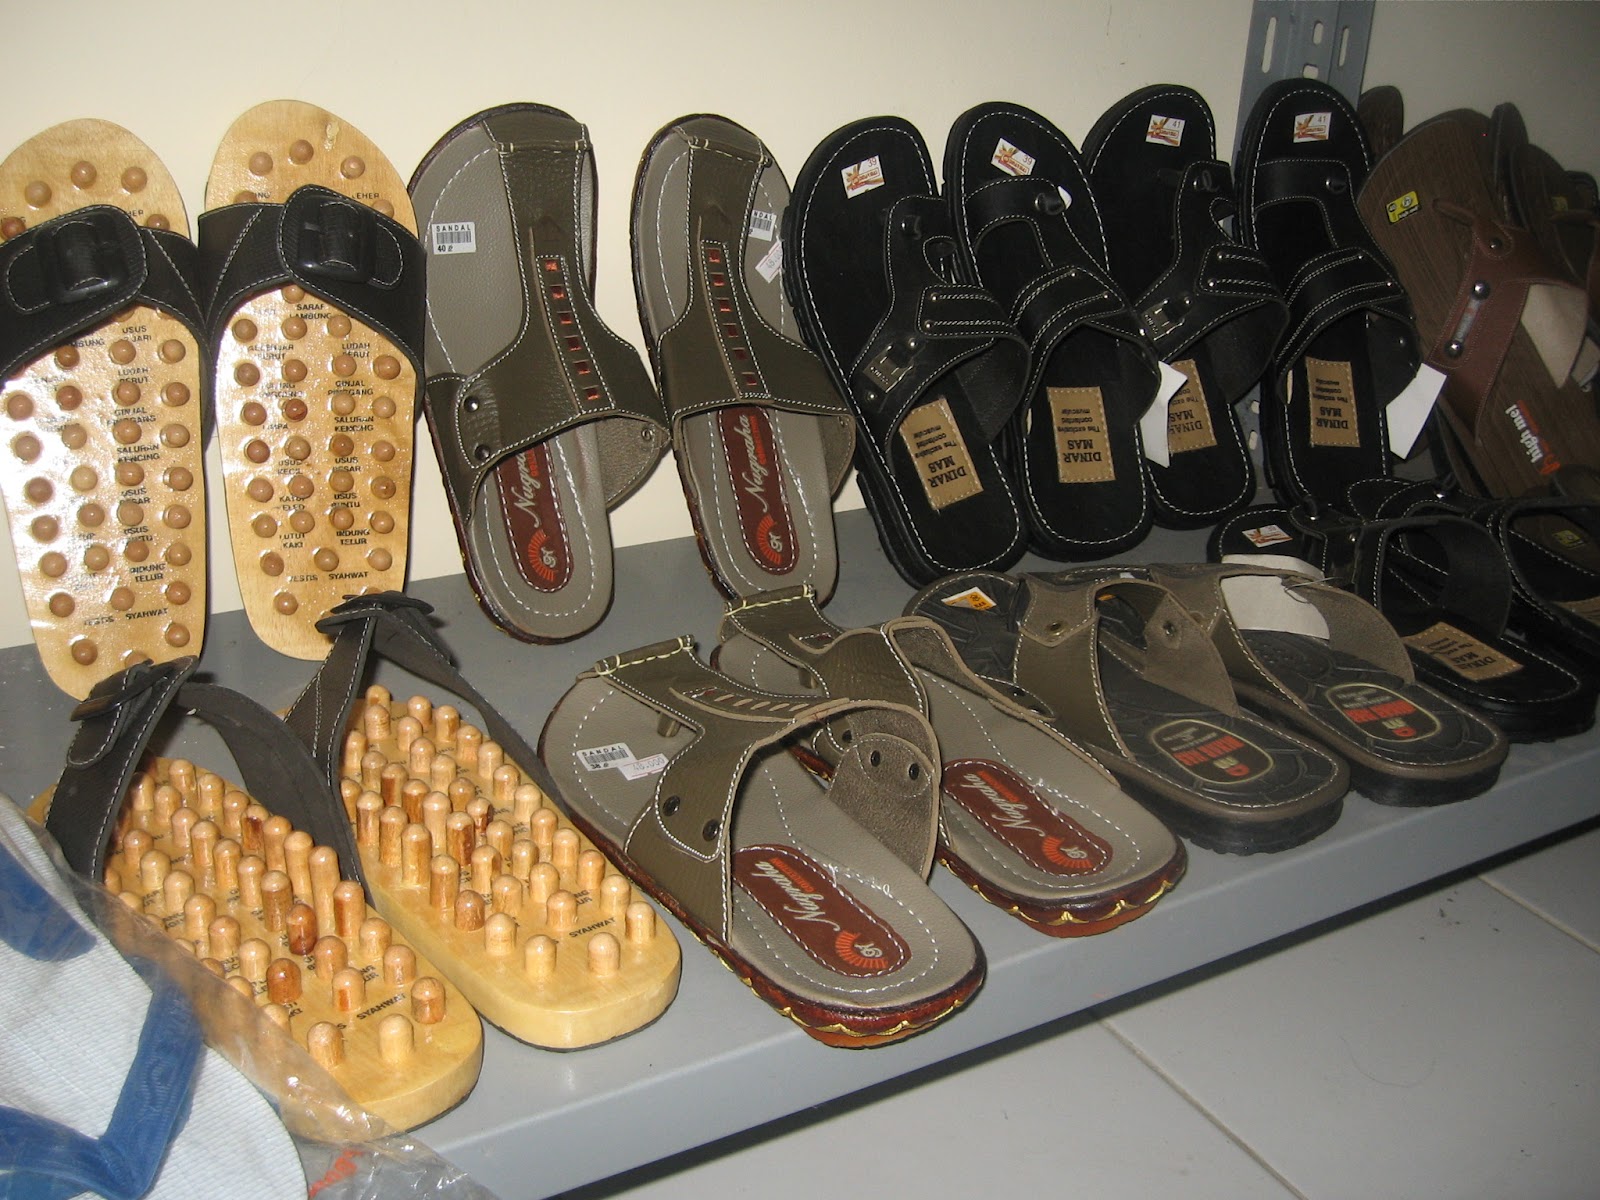 Toko Rubent: Jual Sandal Sepatu Keluarga